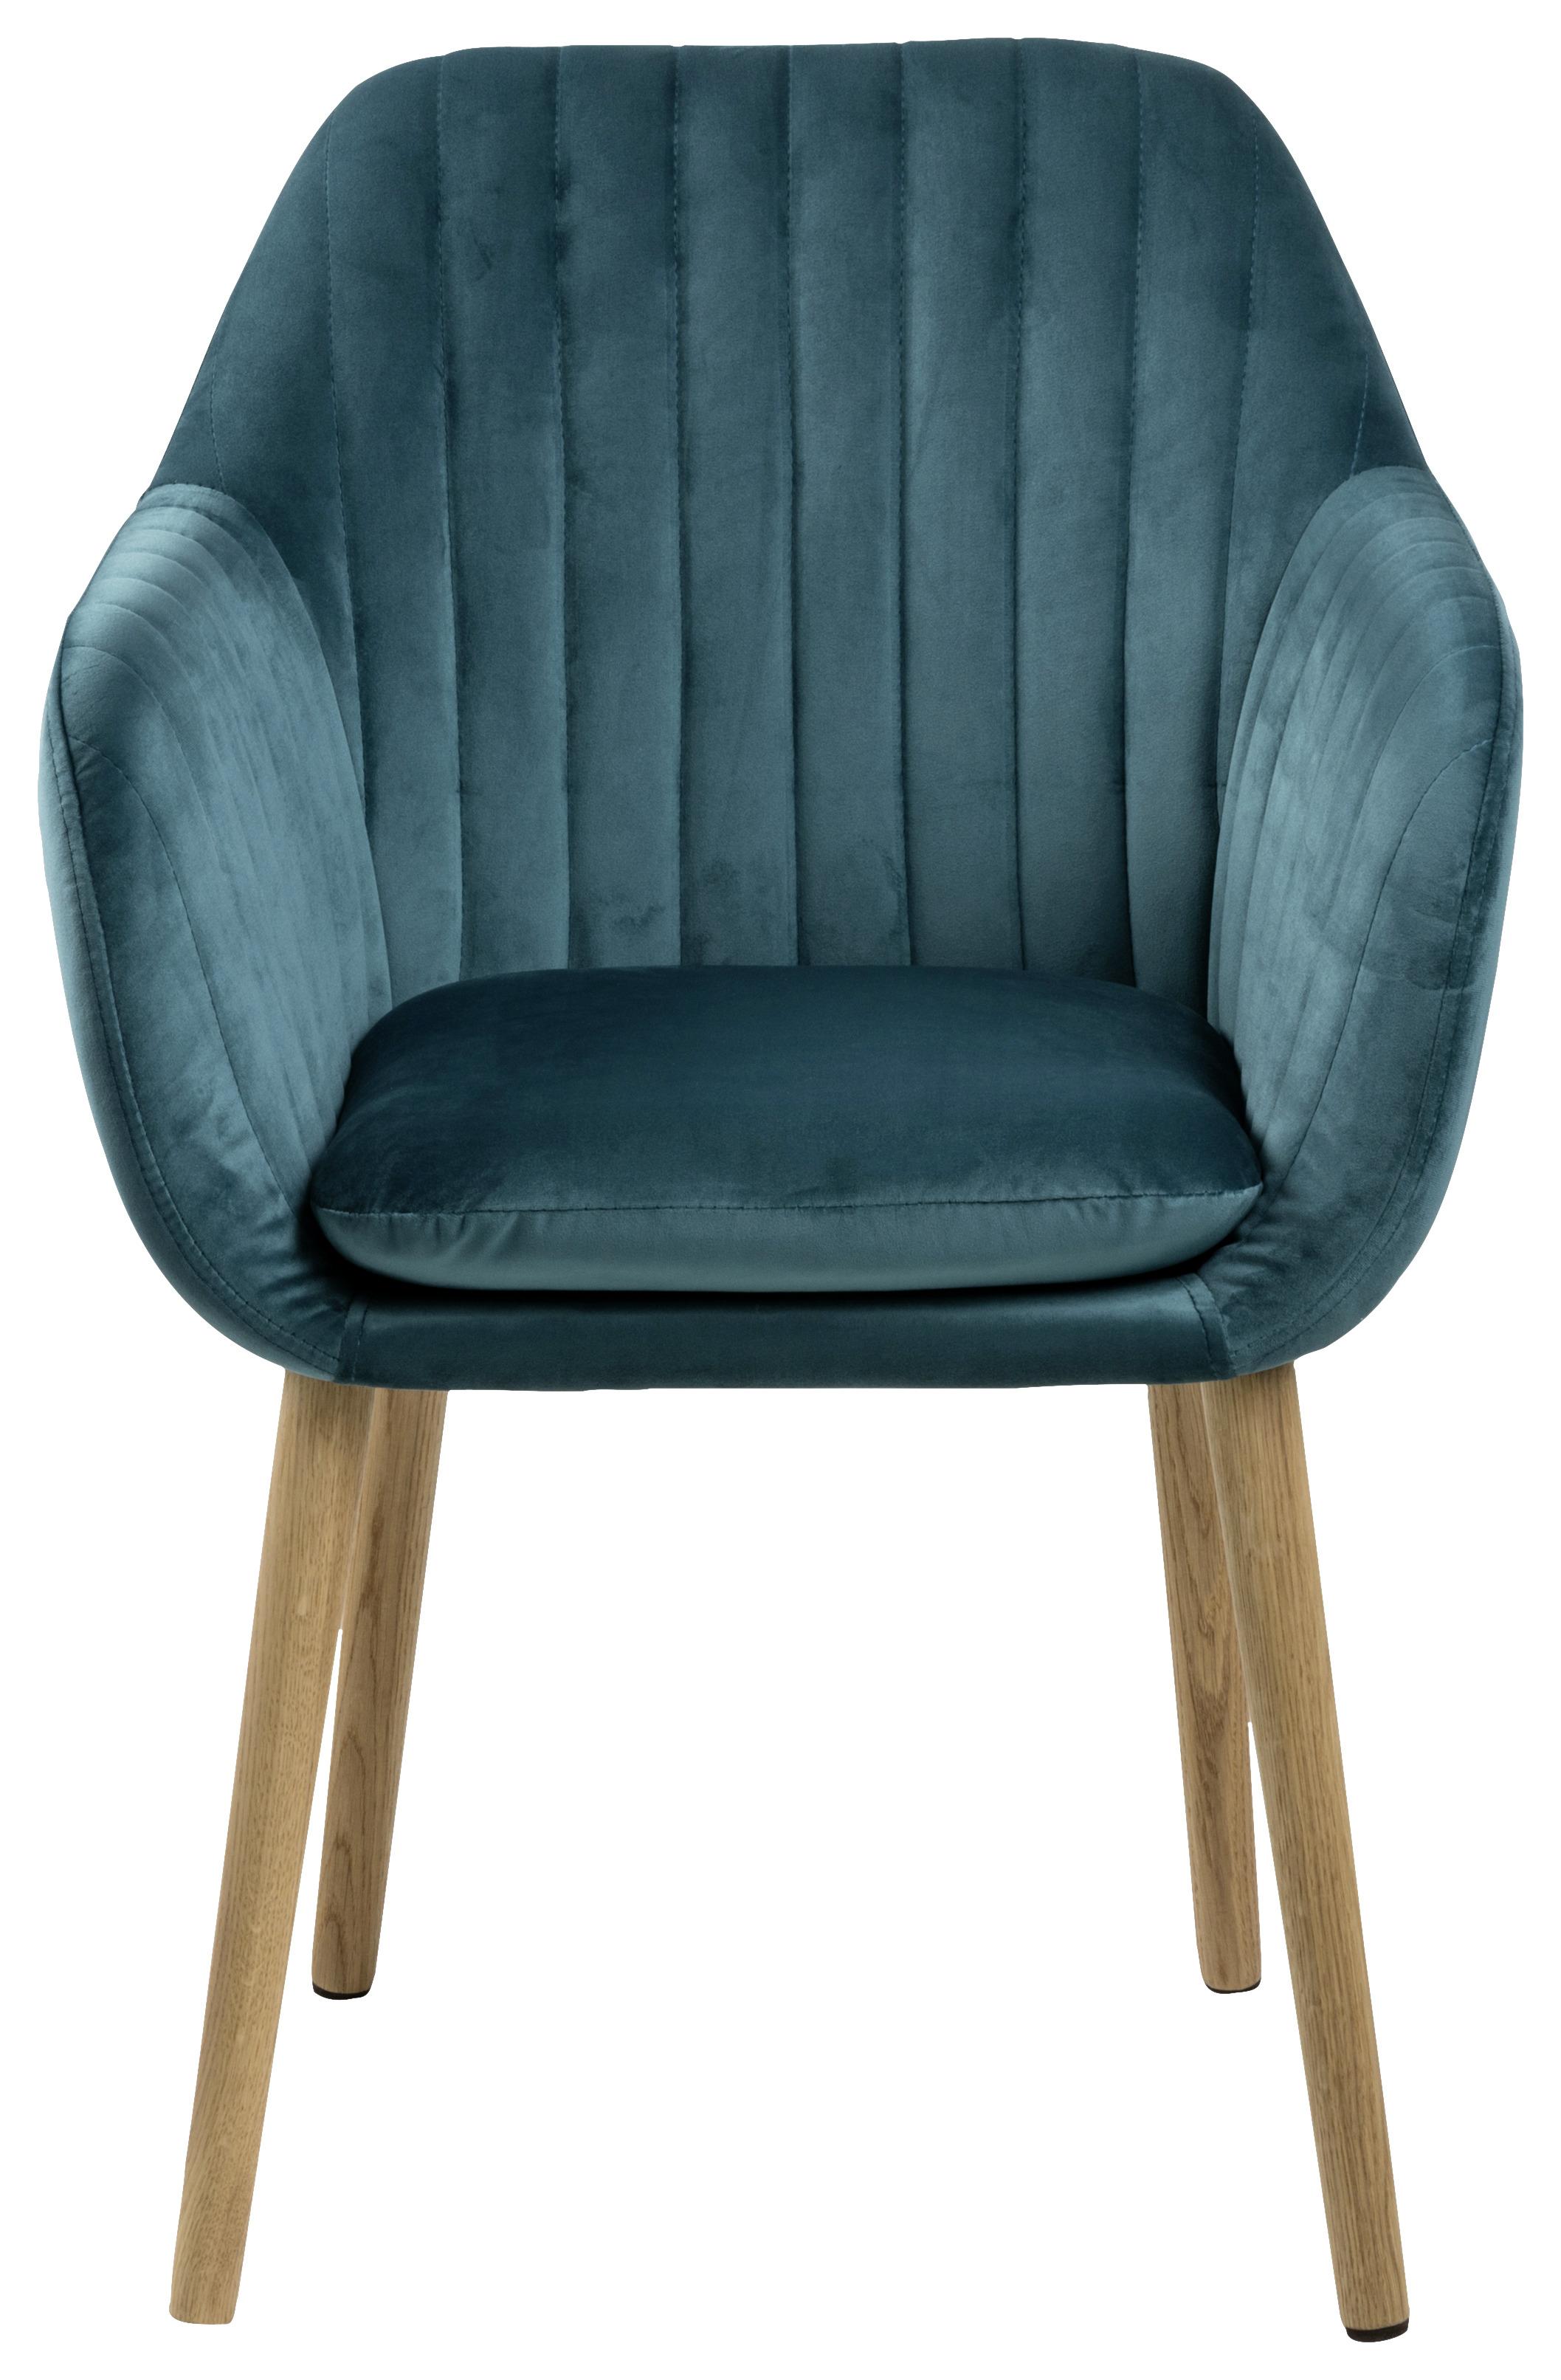 Židle S Područkami Emilia Smaragdově Zelená - smaragdově zelená, Design, dřevo/textil (57/83/59cm) - Carryhome